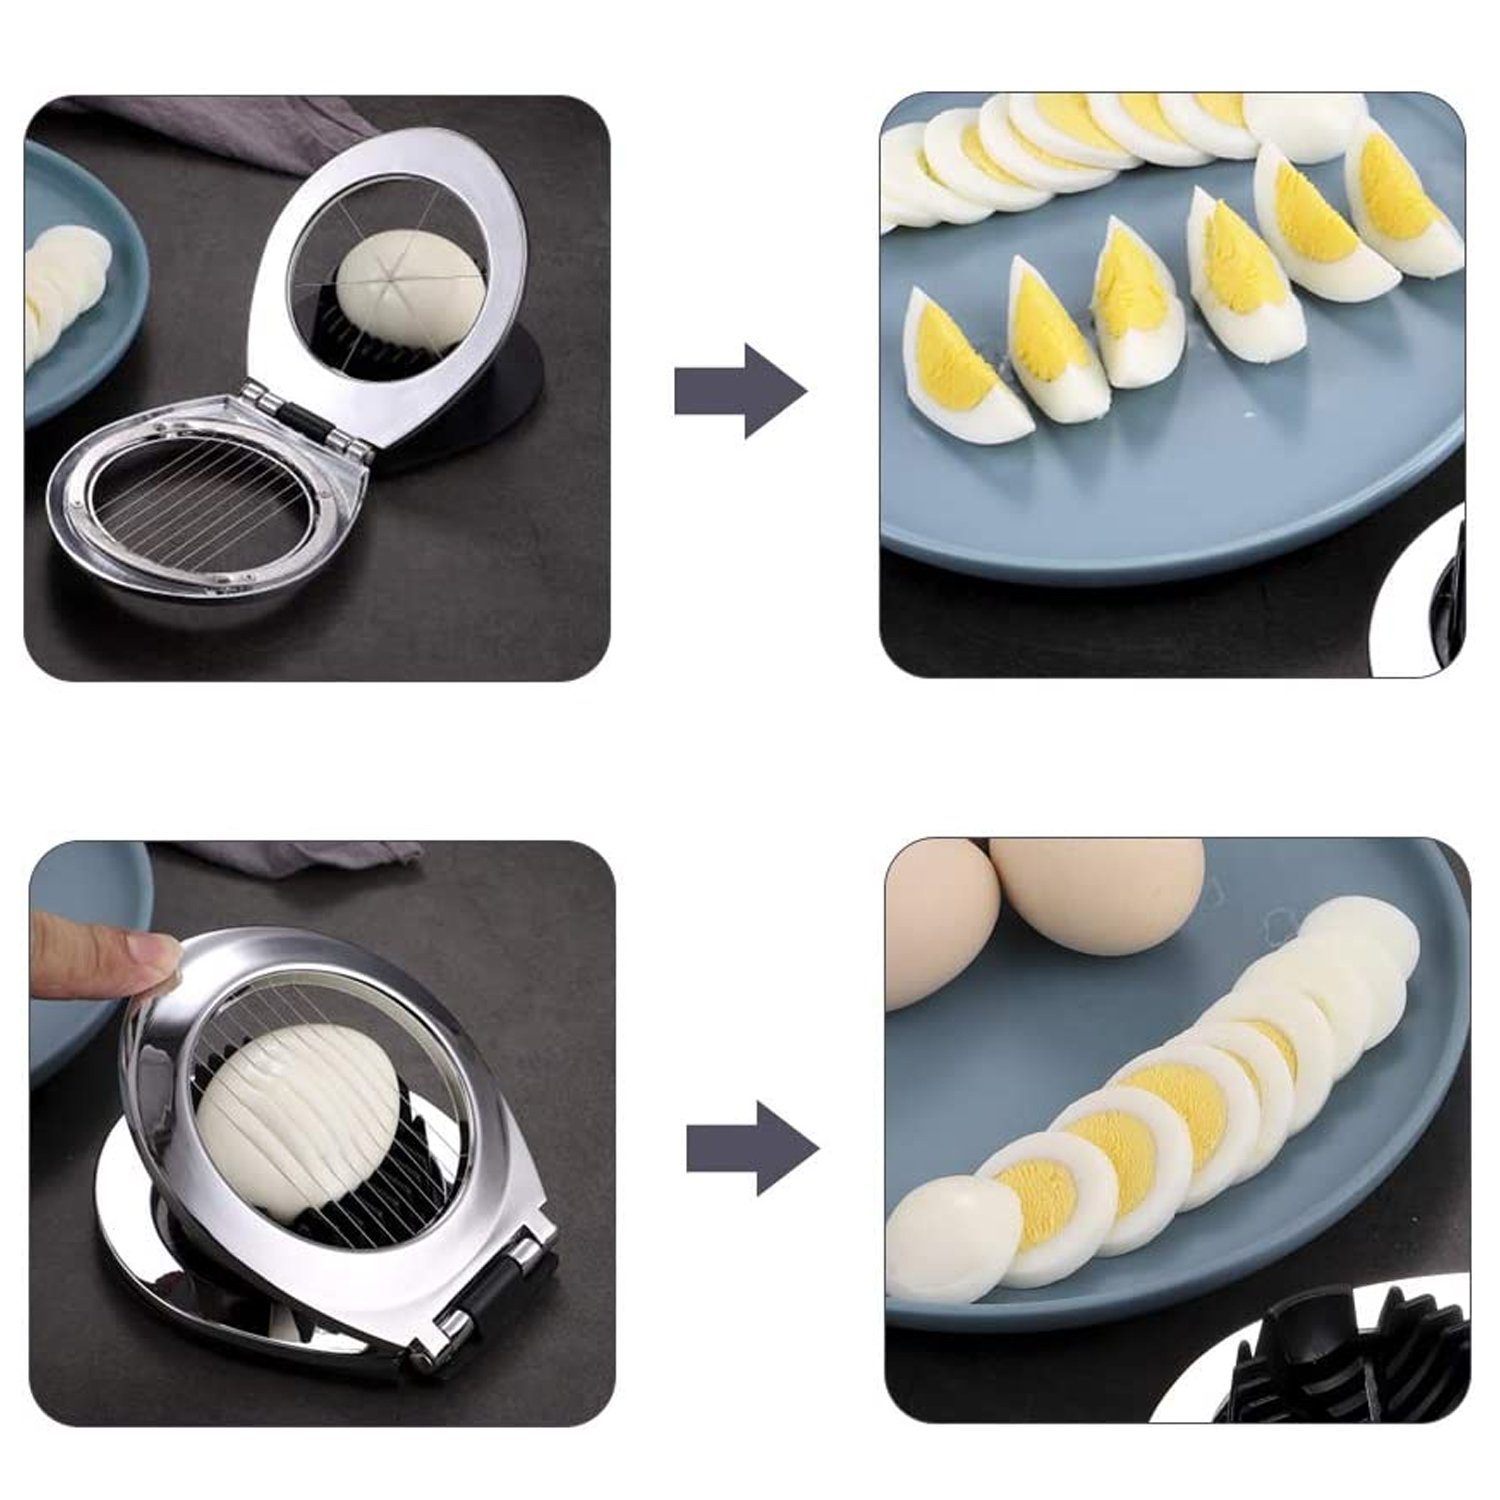 1 Eischneidewerkzeug, Eierschneider zggzerg aus Edelstahl, Eierschneider 2 Eierschneider in